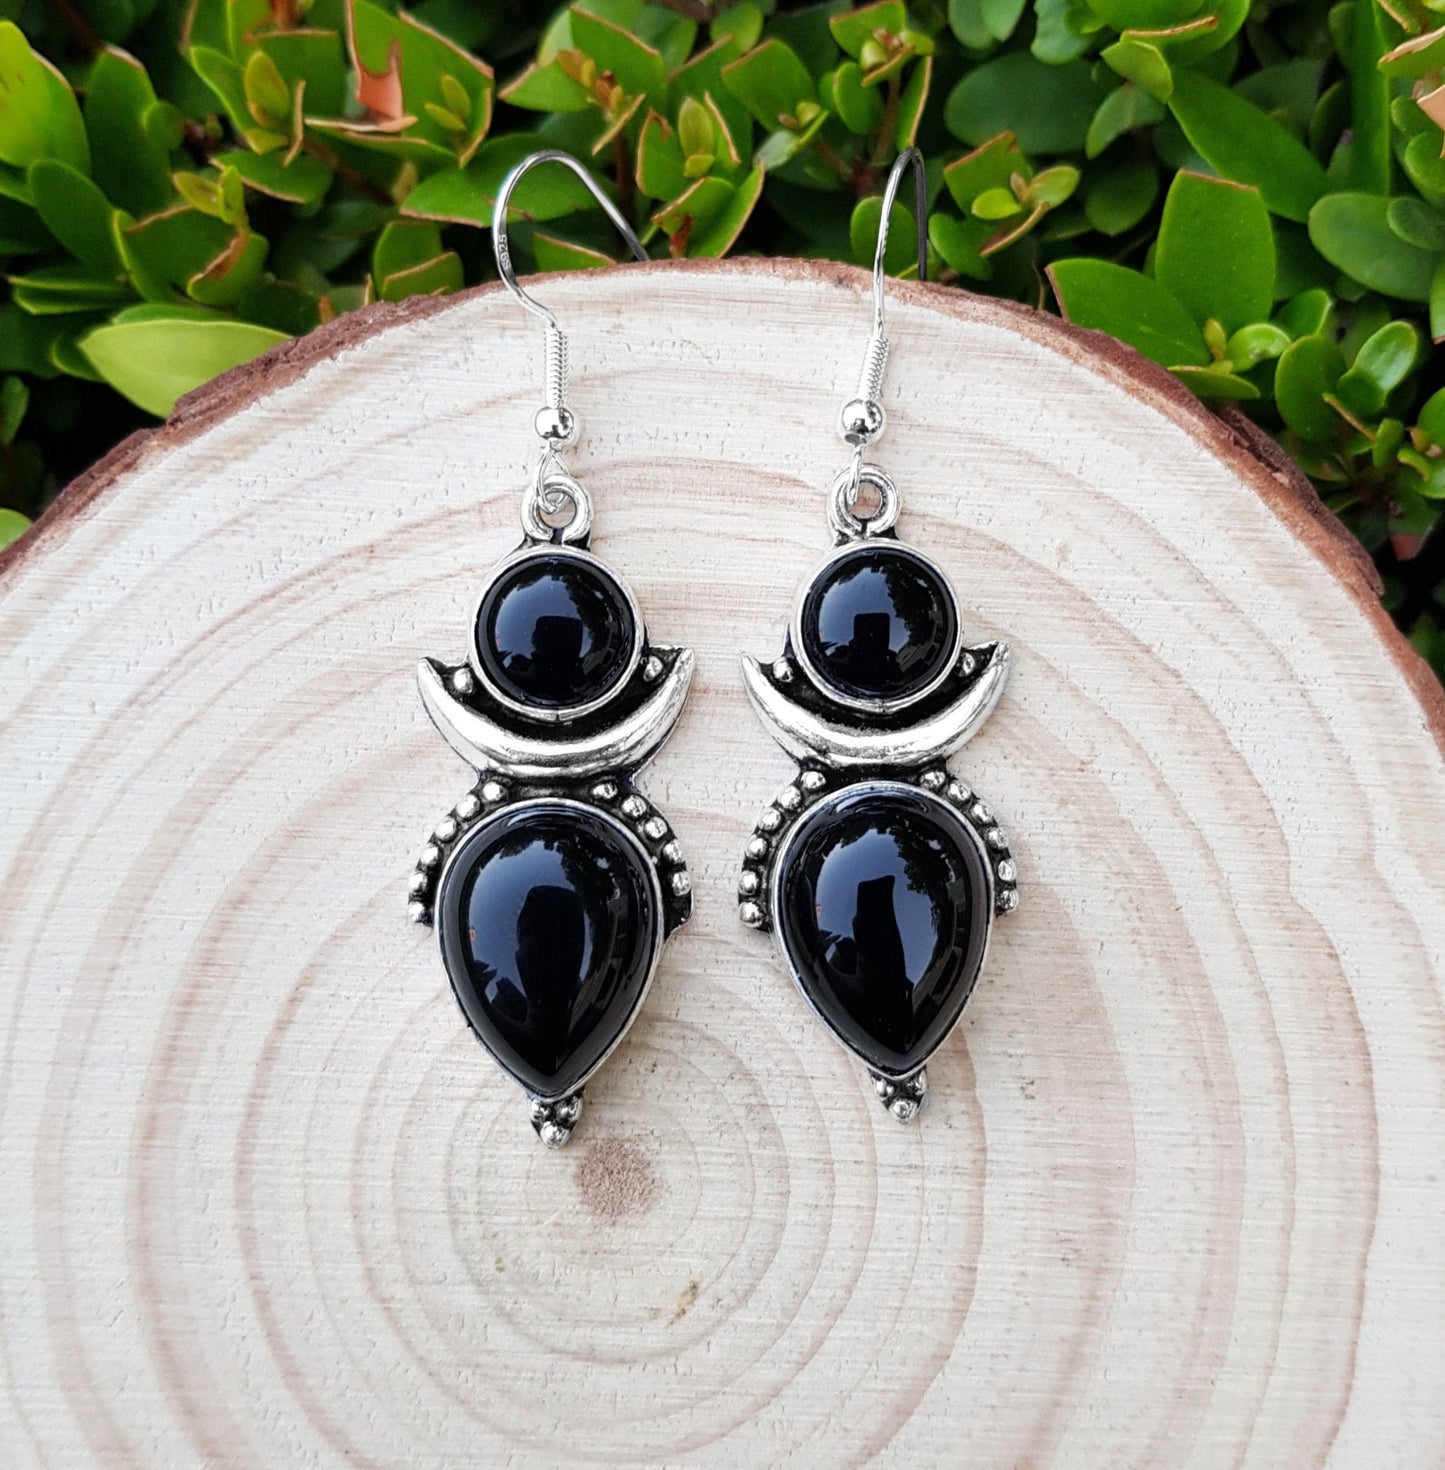 Black Onyx Crescent Moon Earrings In Sterling Silver Dangle Statement Earrings Boho Ethnic Earrings Gem Stone Earrings GypsyJewelry